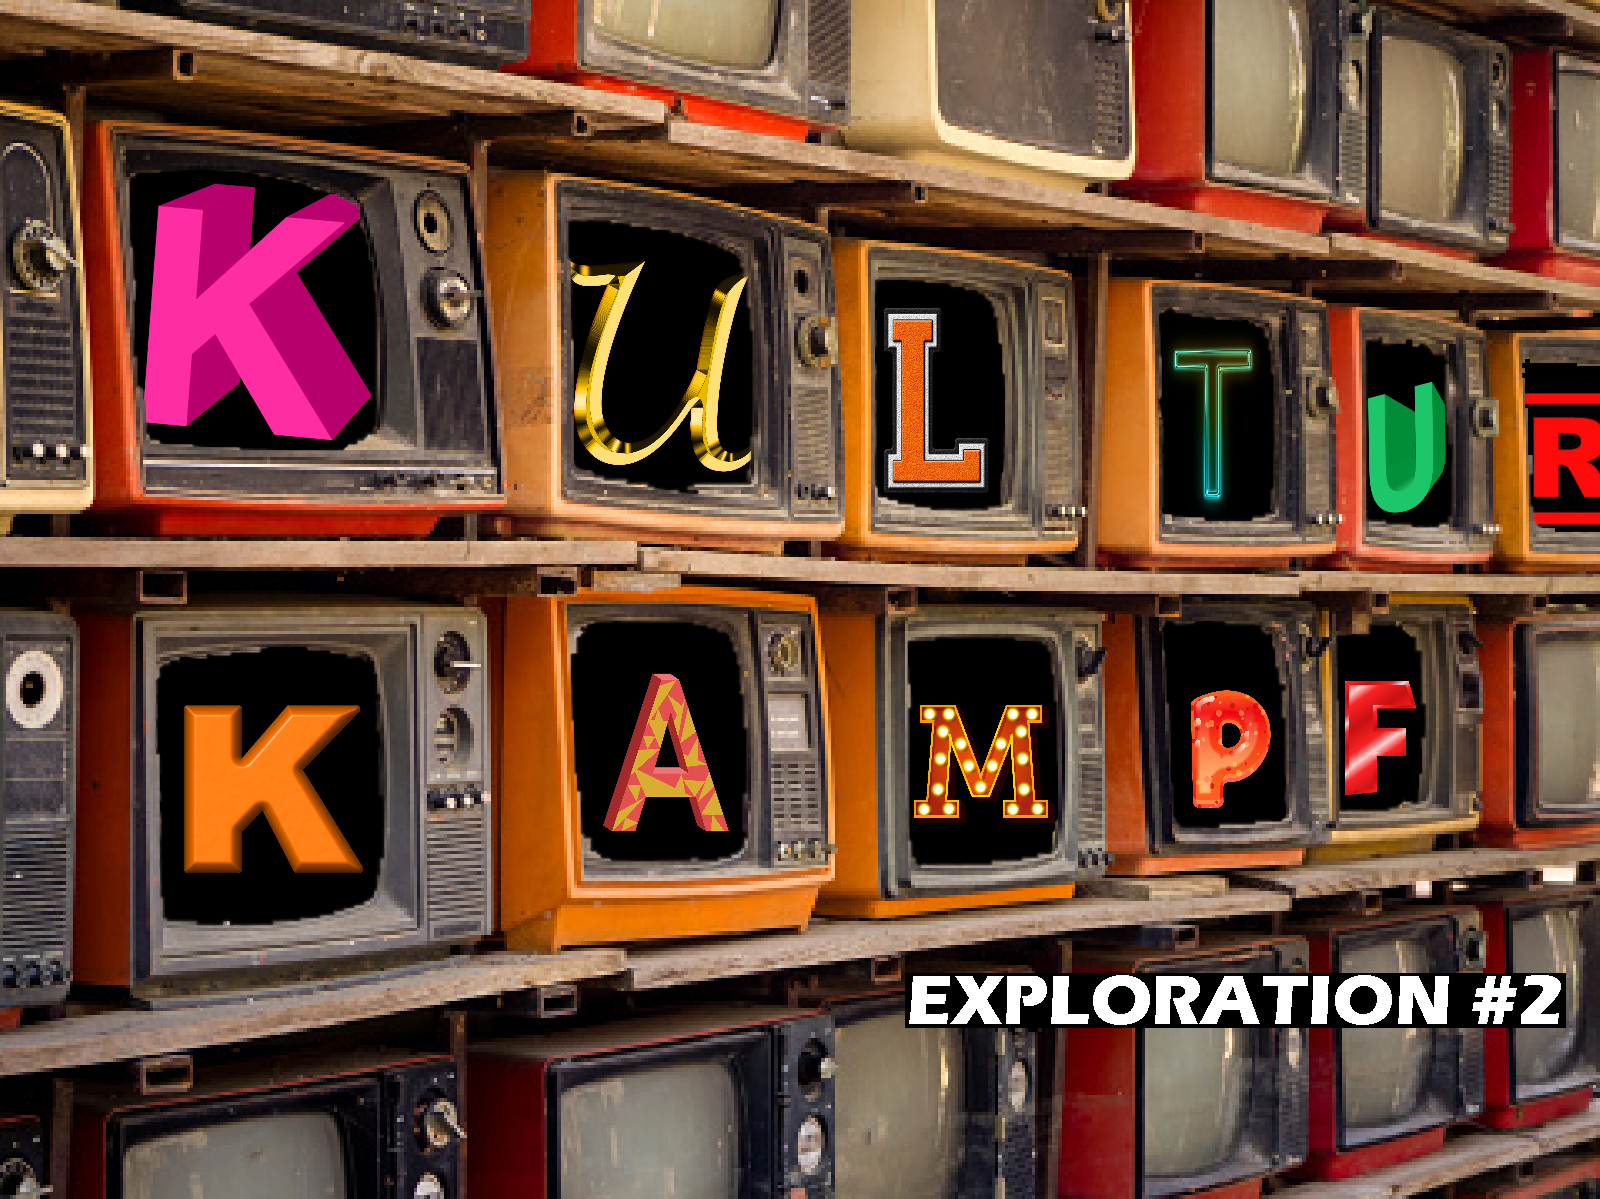 wall of televisions spelling kulturkampf